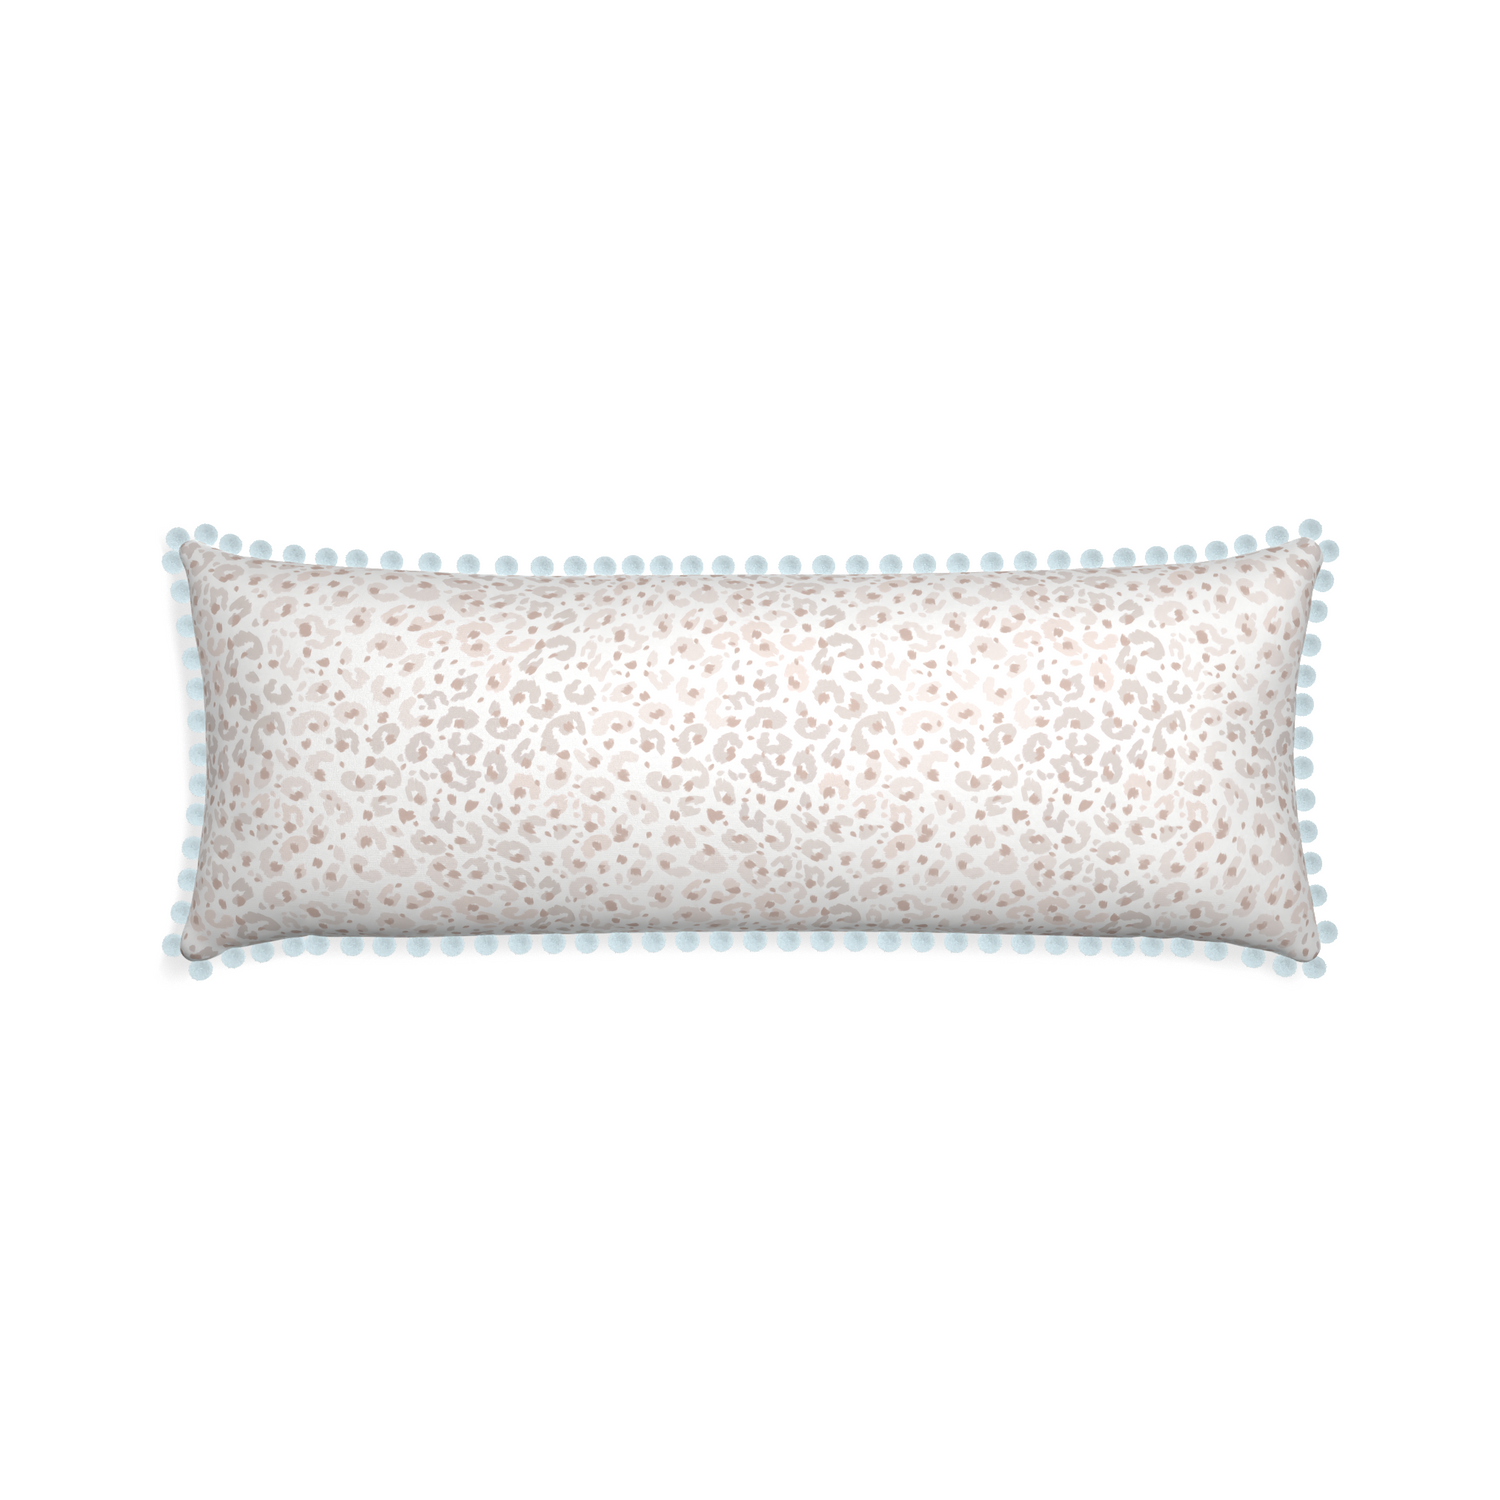 Xl-lumbar rosie custom pillow with powder pom pom on white background